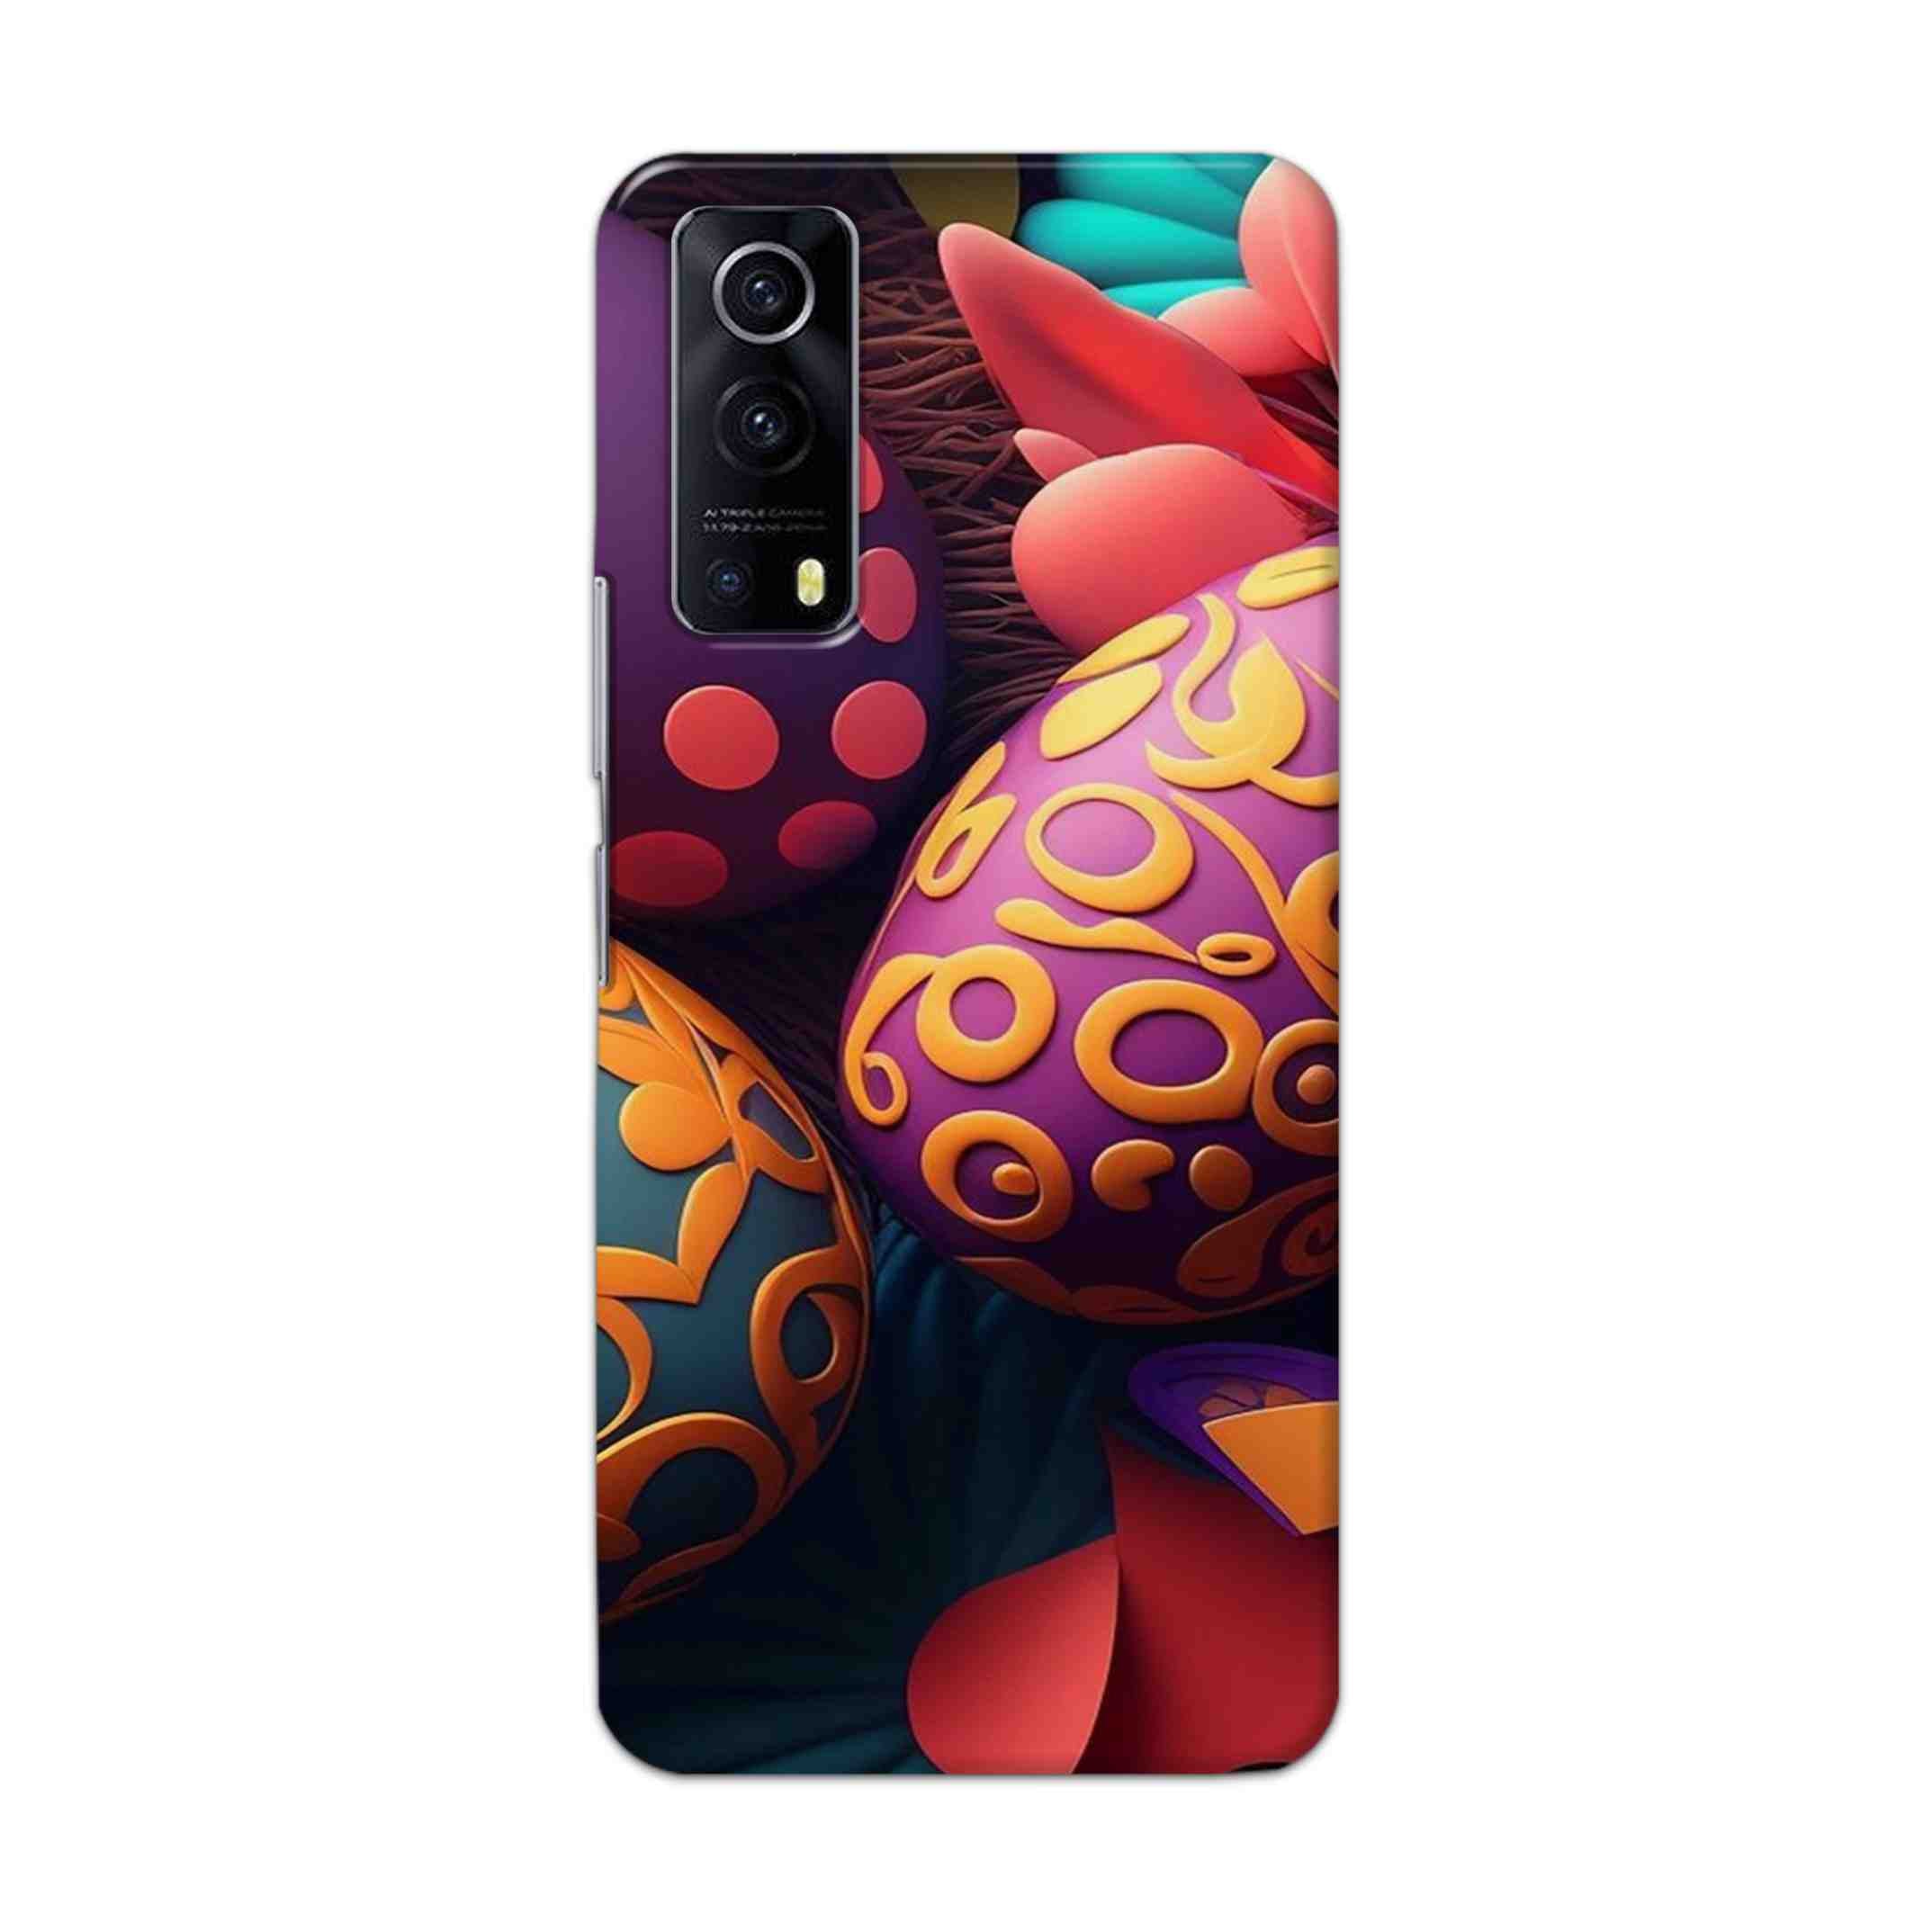 Buy Easter Egg Hard Back Mobile Phone Case Cover For Vivo IQOO Z3 Online